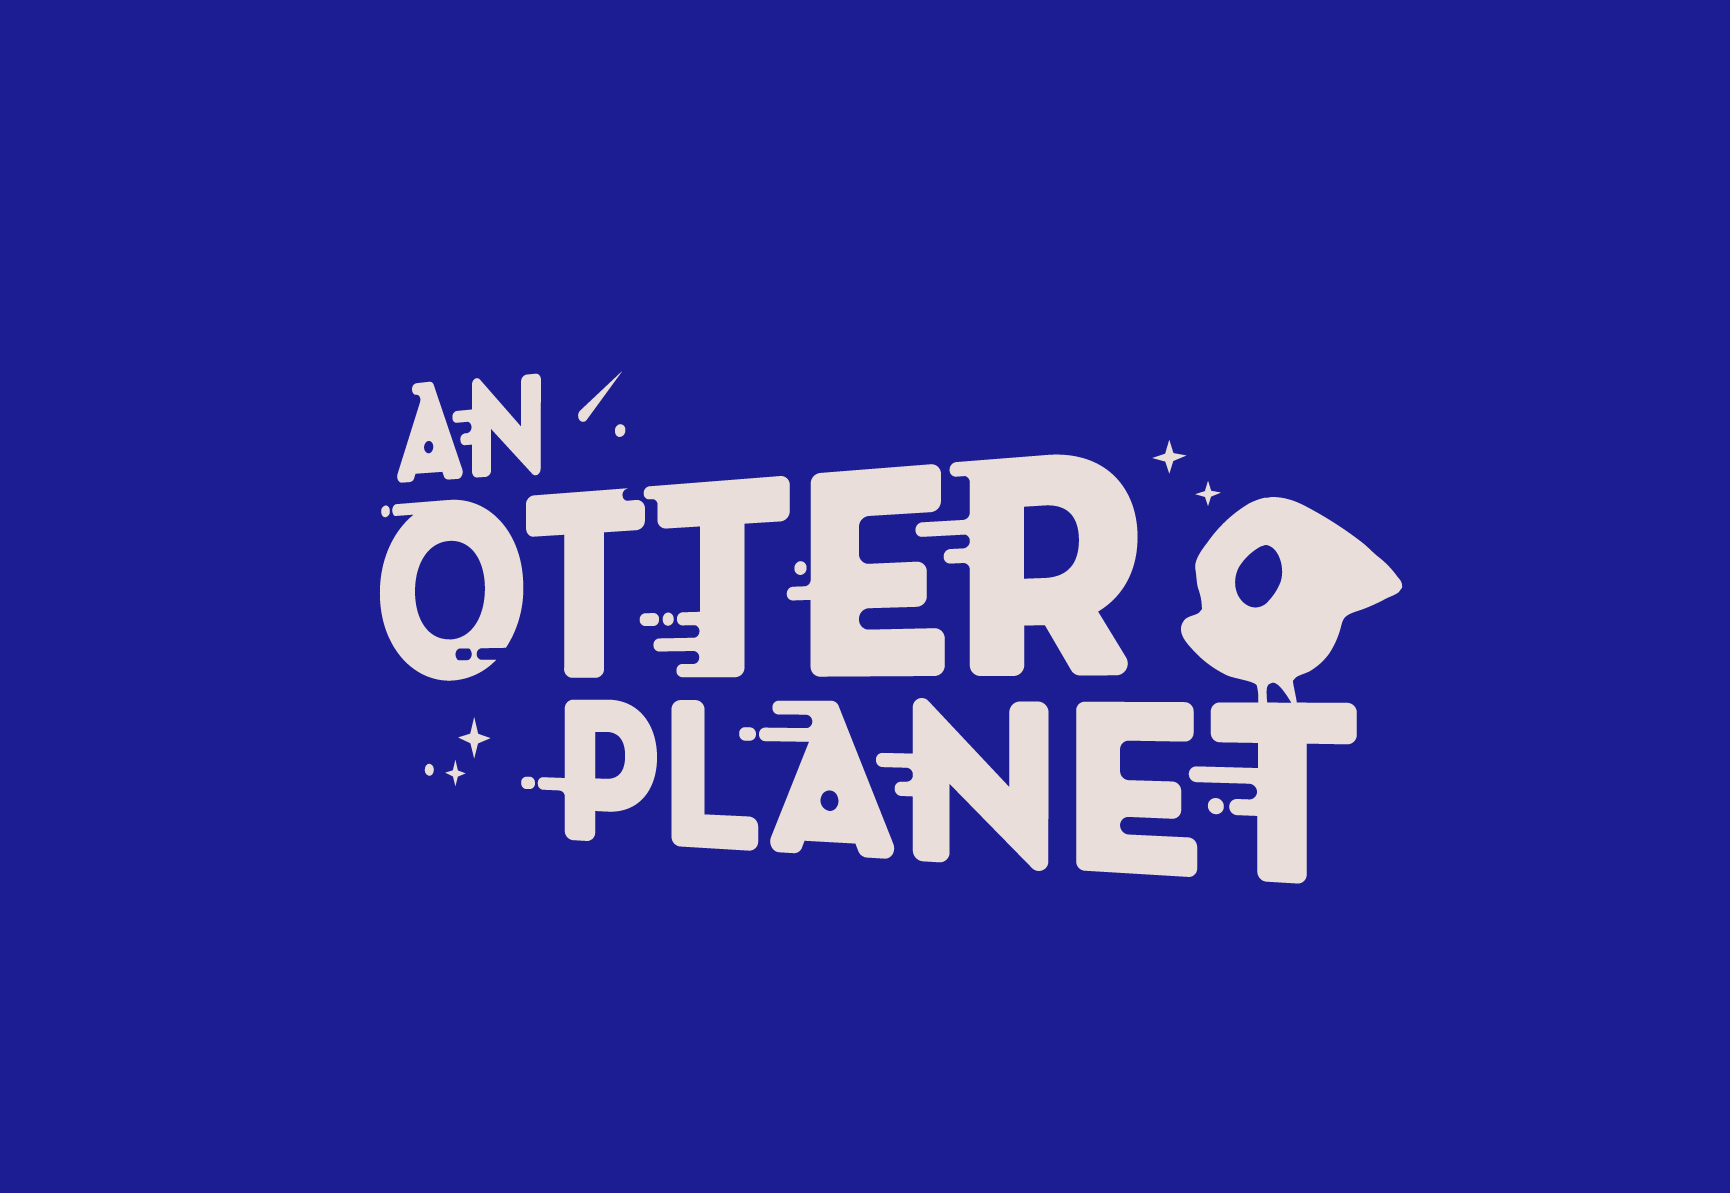 An Otter Planet